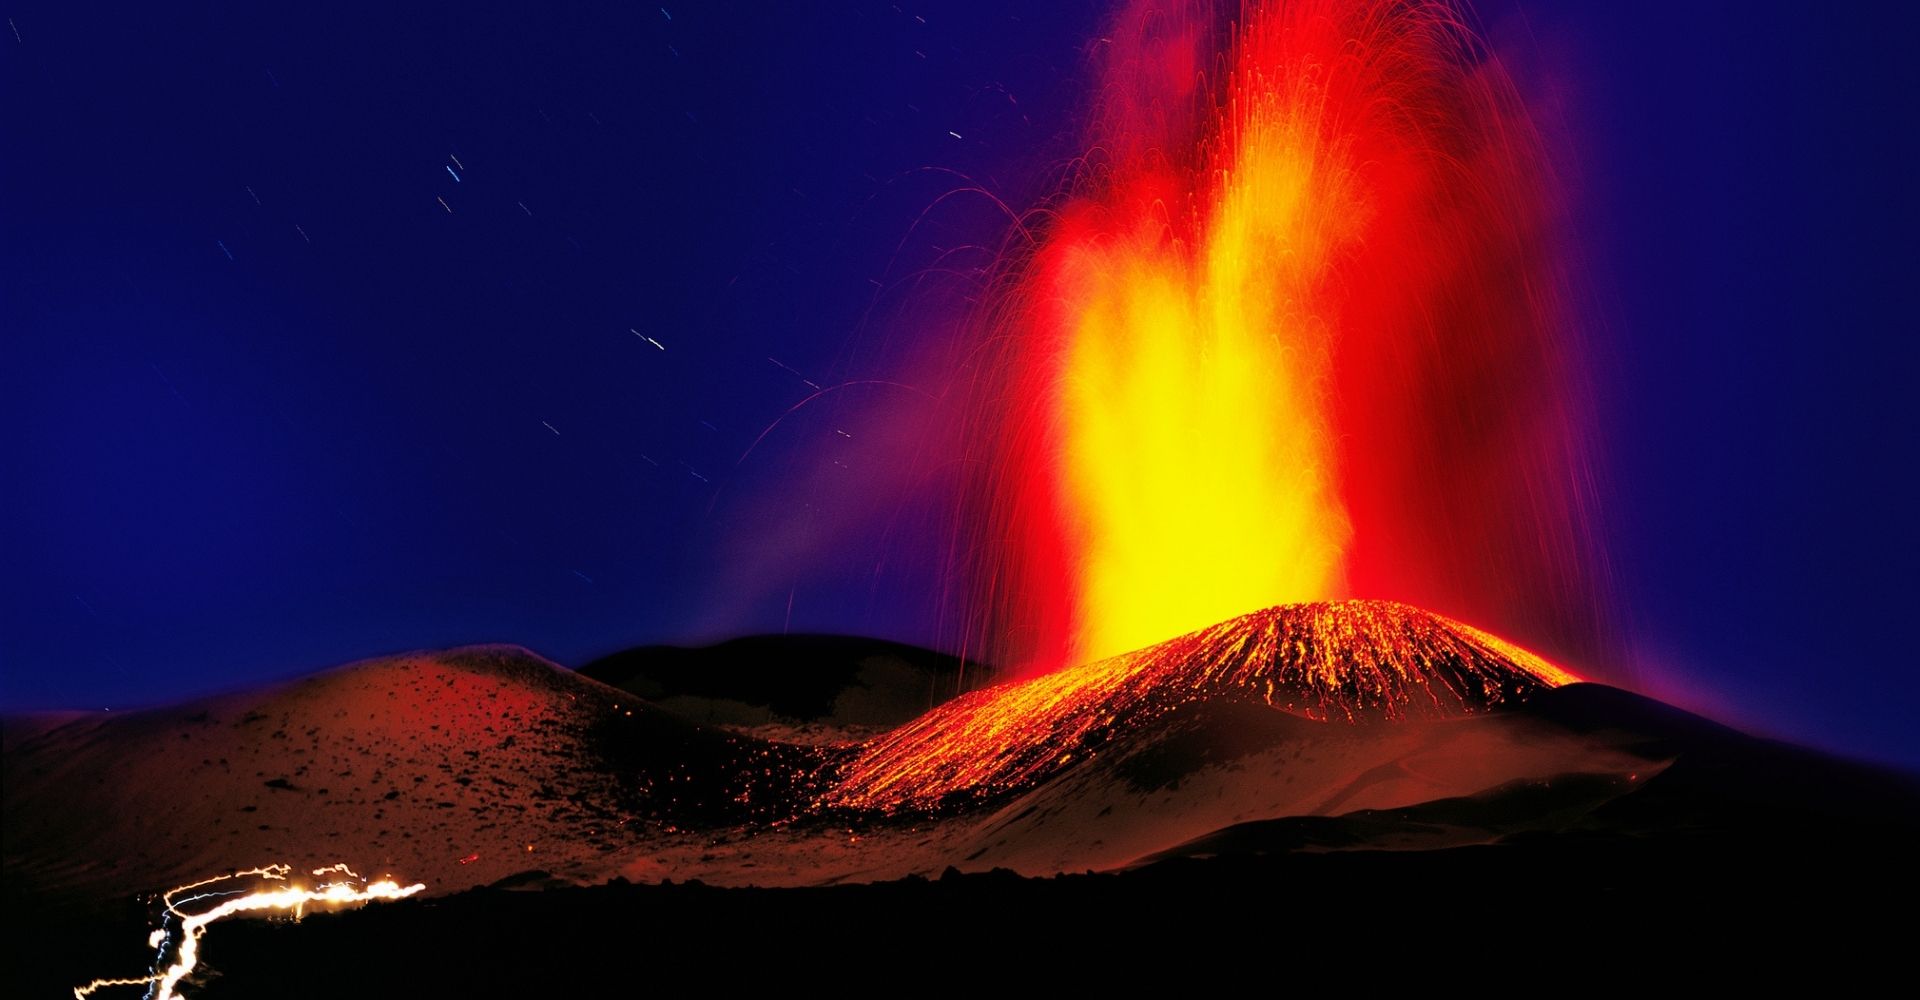 “La montagna di fuoco”: il dialogo sentimentale ed ecologico fra Leonardo Caffo e l’Etna